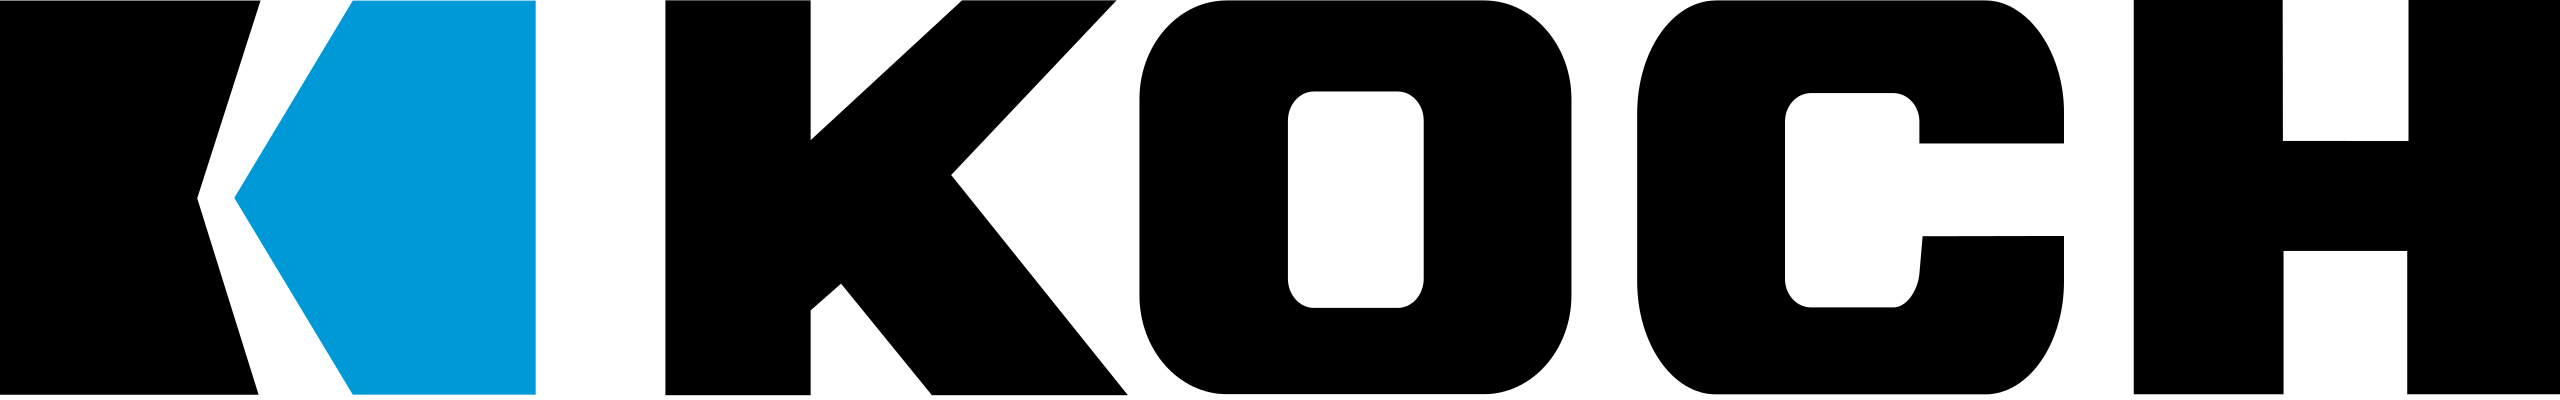 Koch_logo.svg